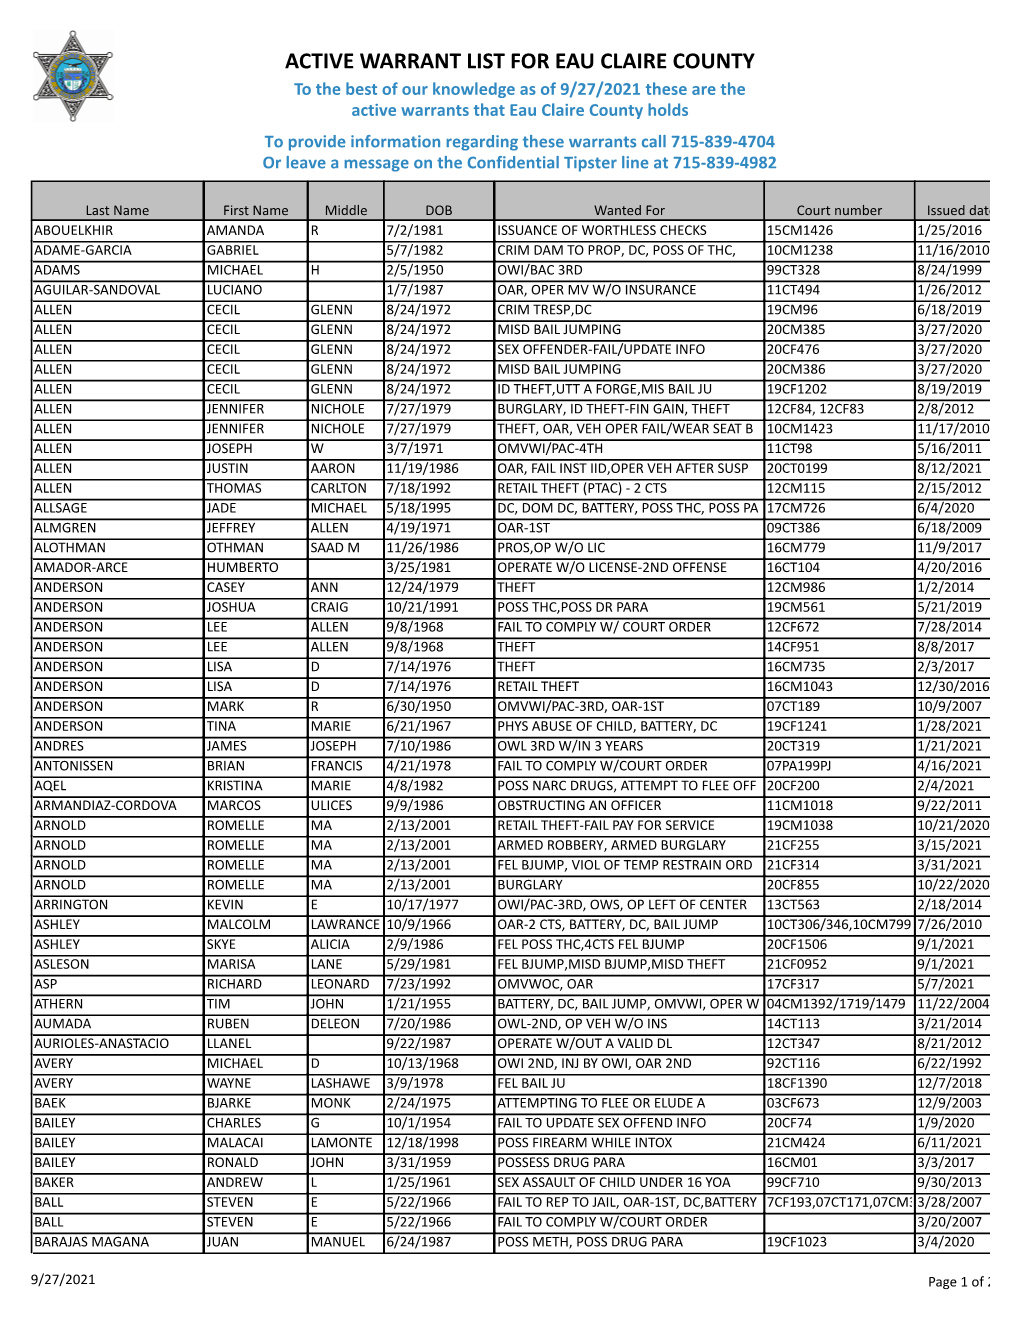 Active Warrant List for Eau Claire County